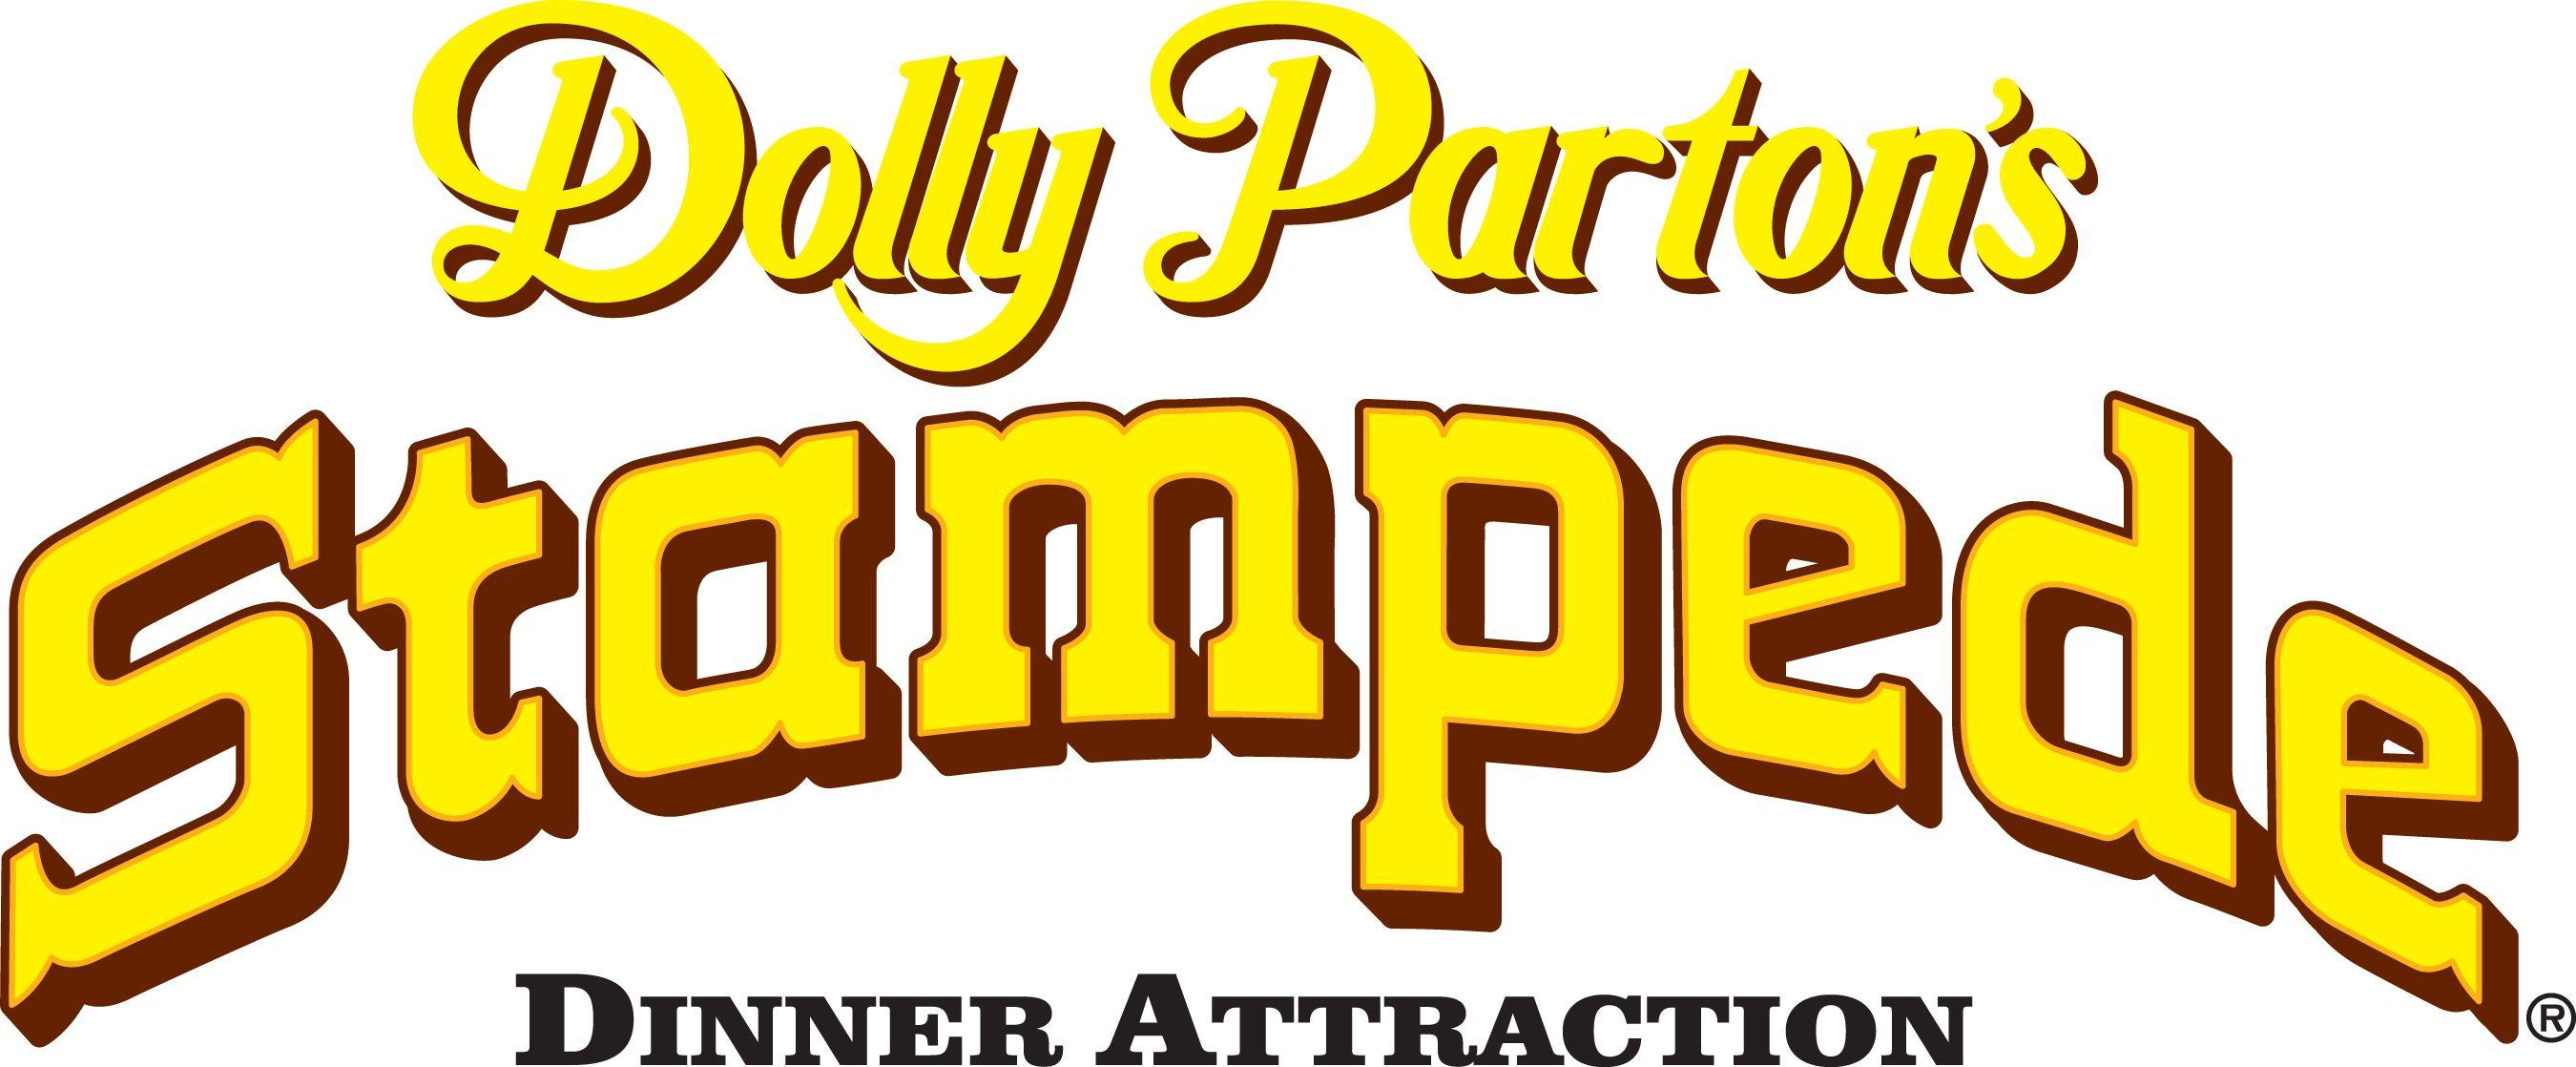 Tennessee Mountain Logo - Dolly Parton's Smoky Mountain Adventures, Pigeon Forge, TN Jobs ...